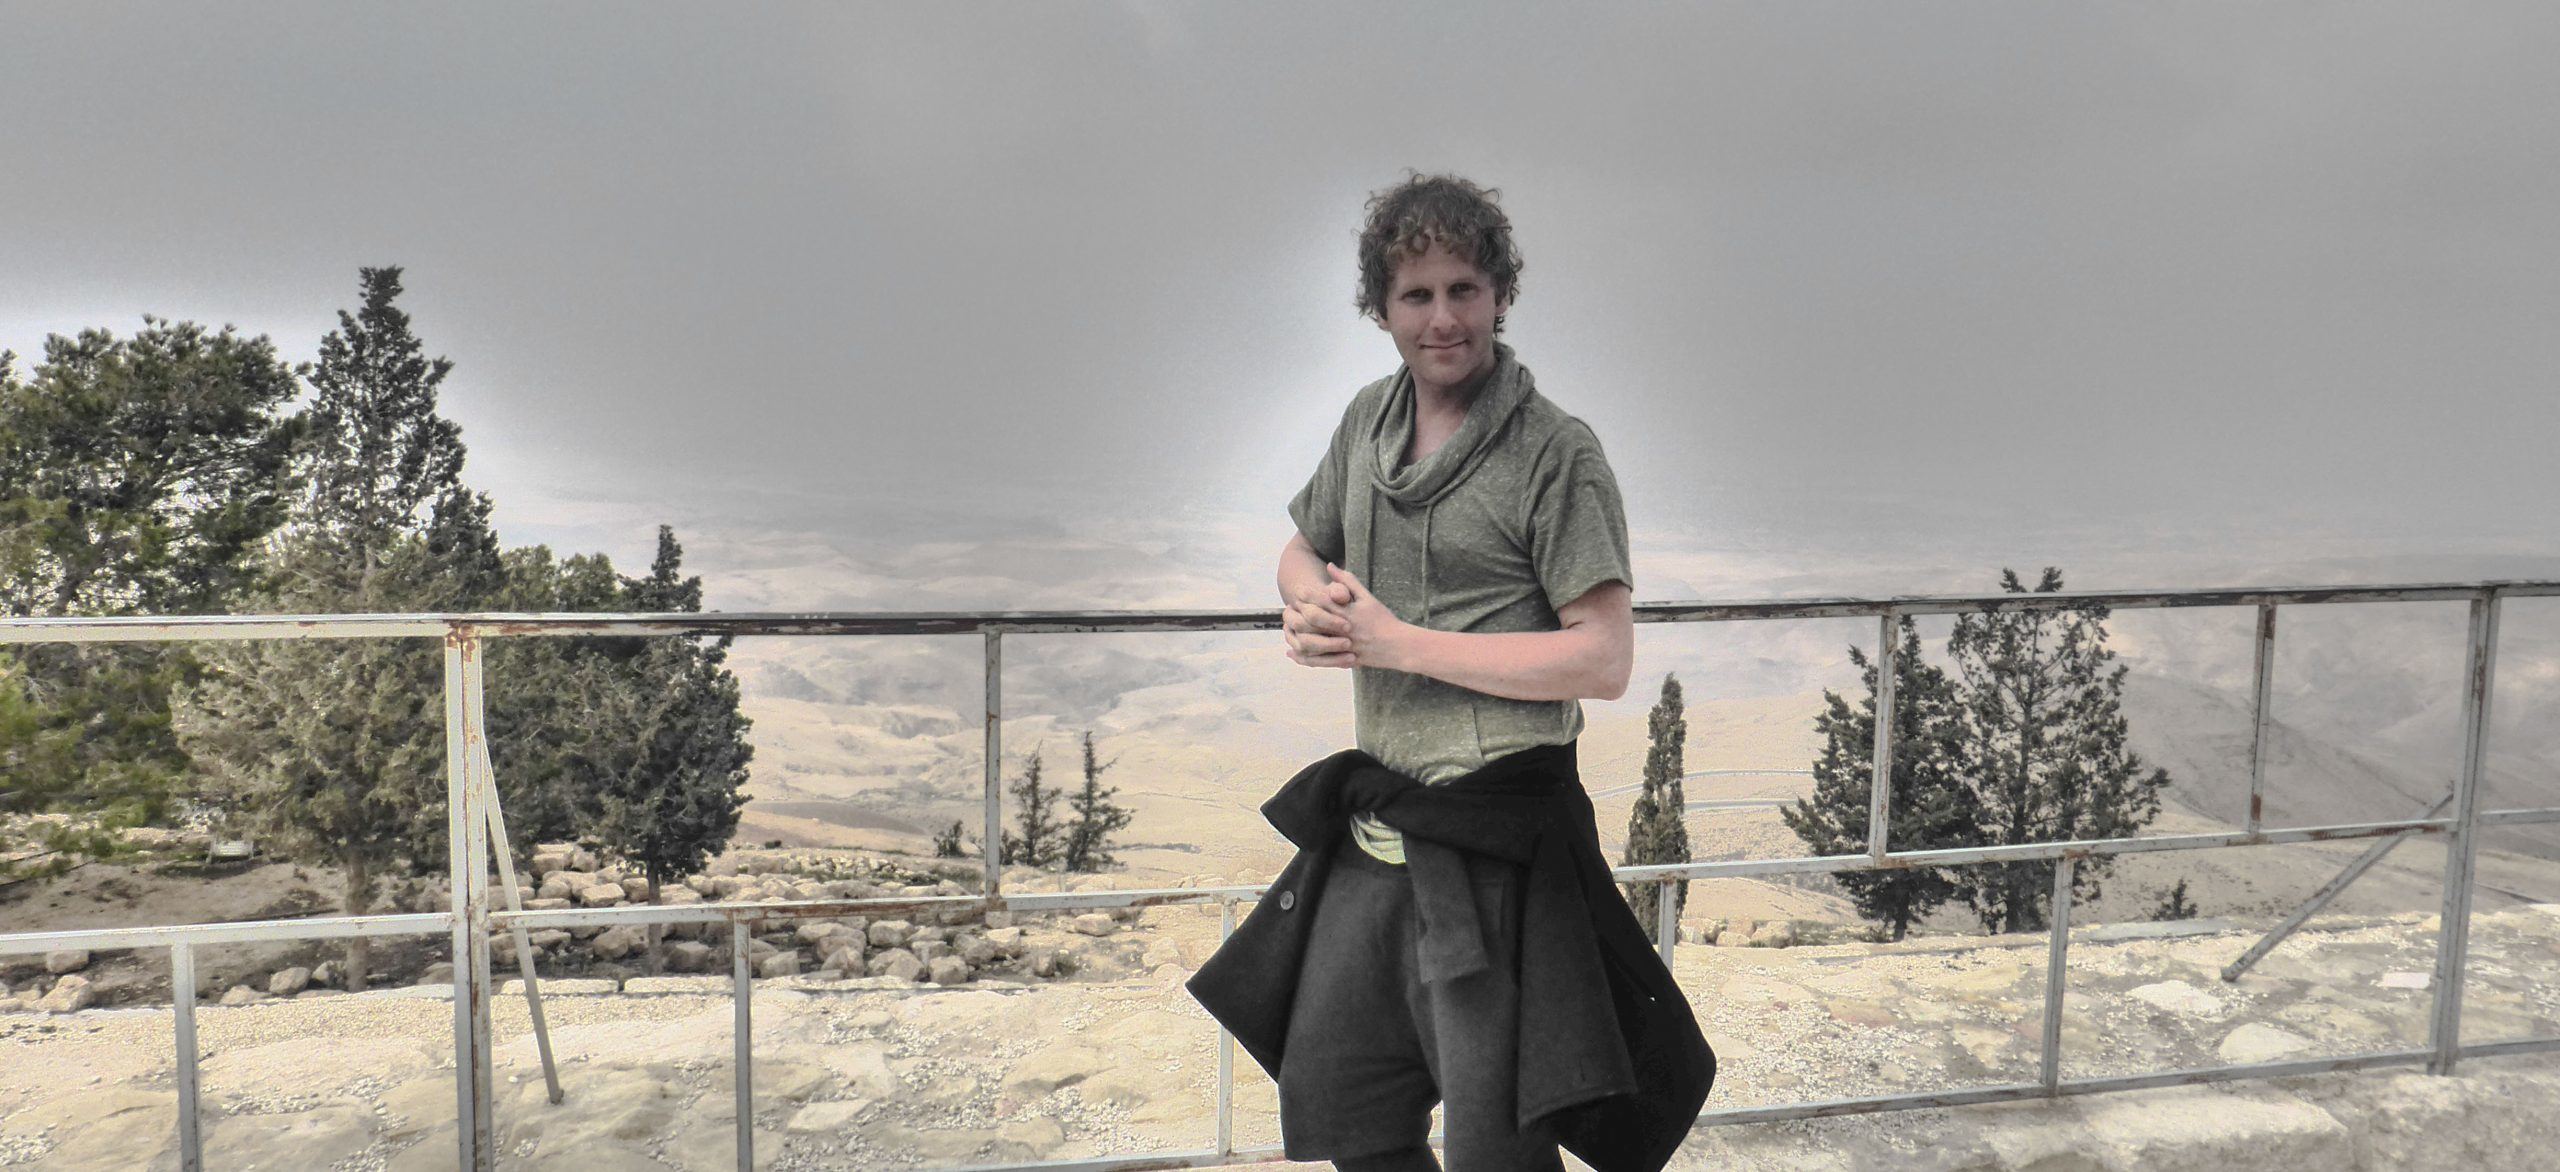 Ben at Mt Nebo Jordan